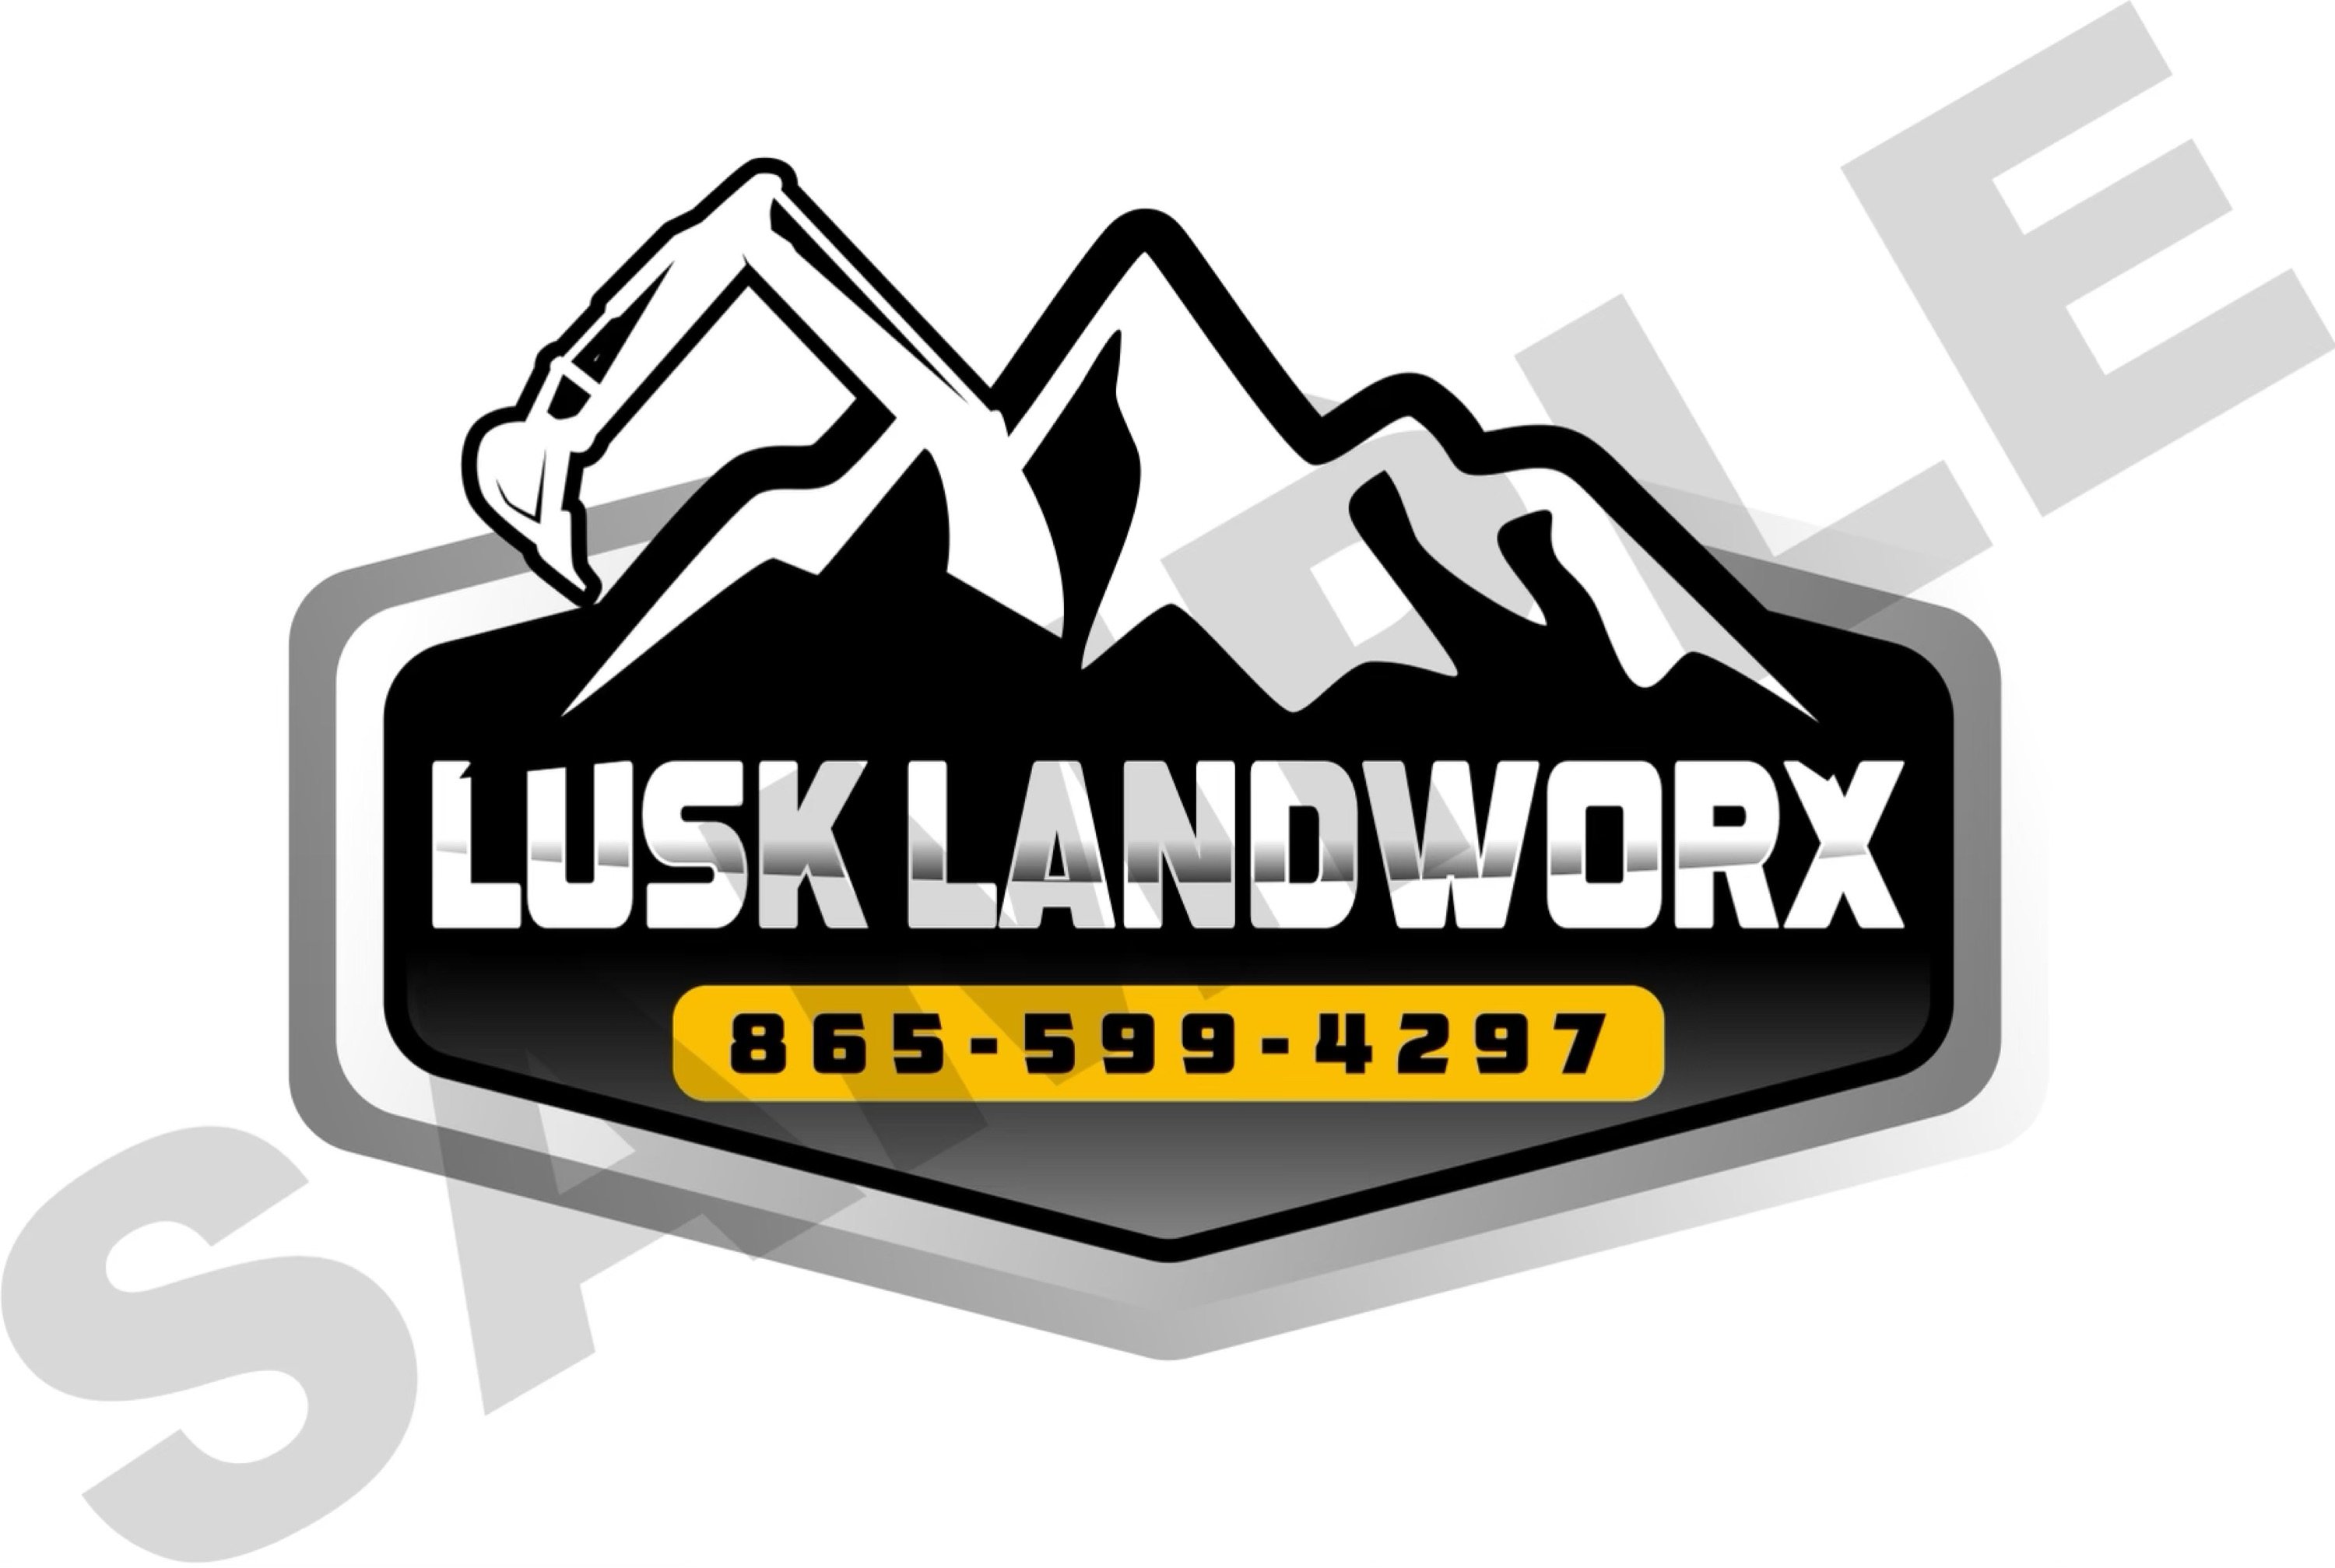 Lusk Landworx Logo